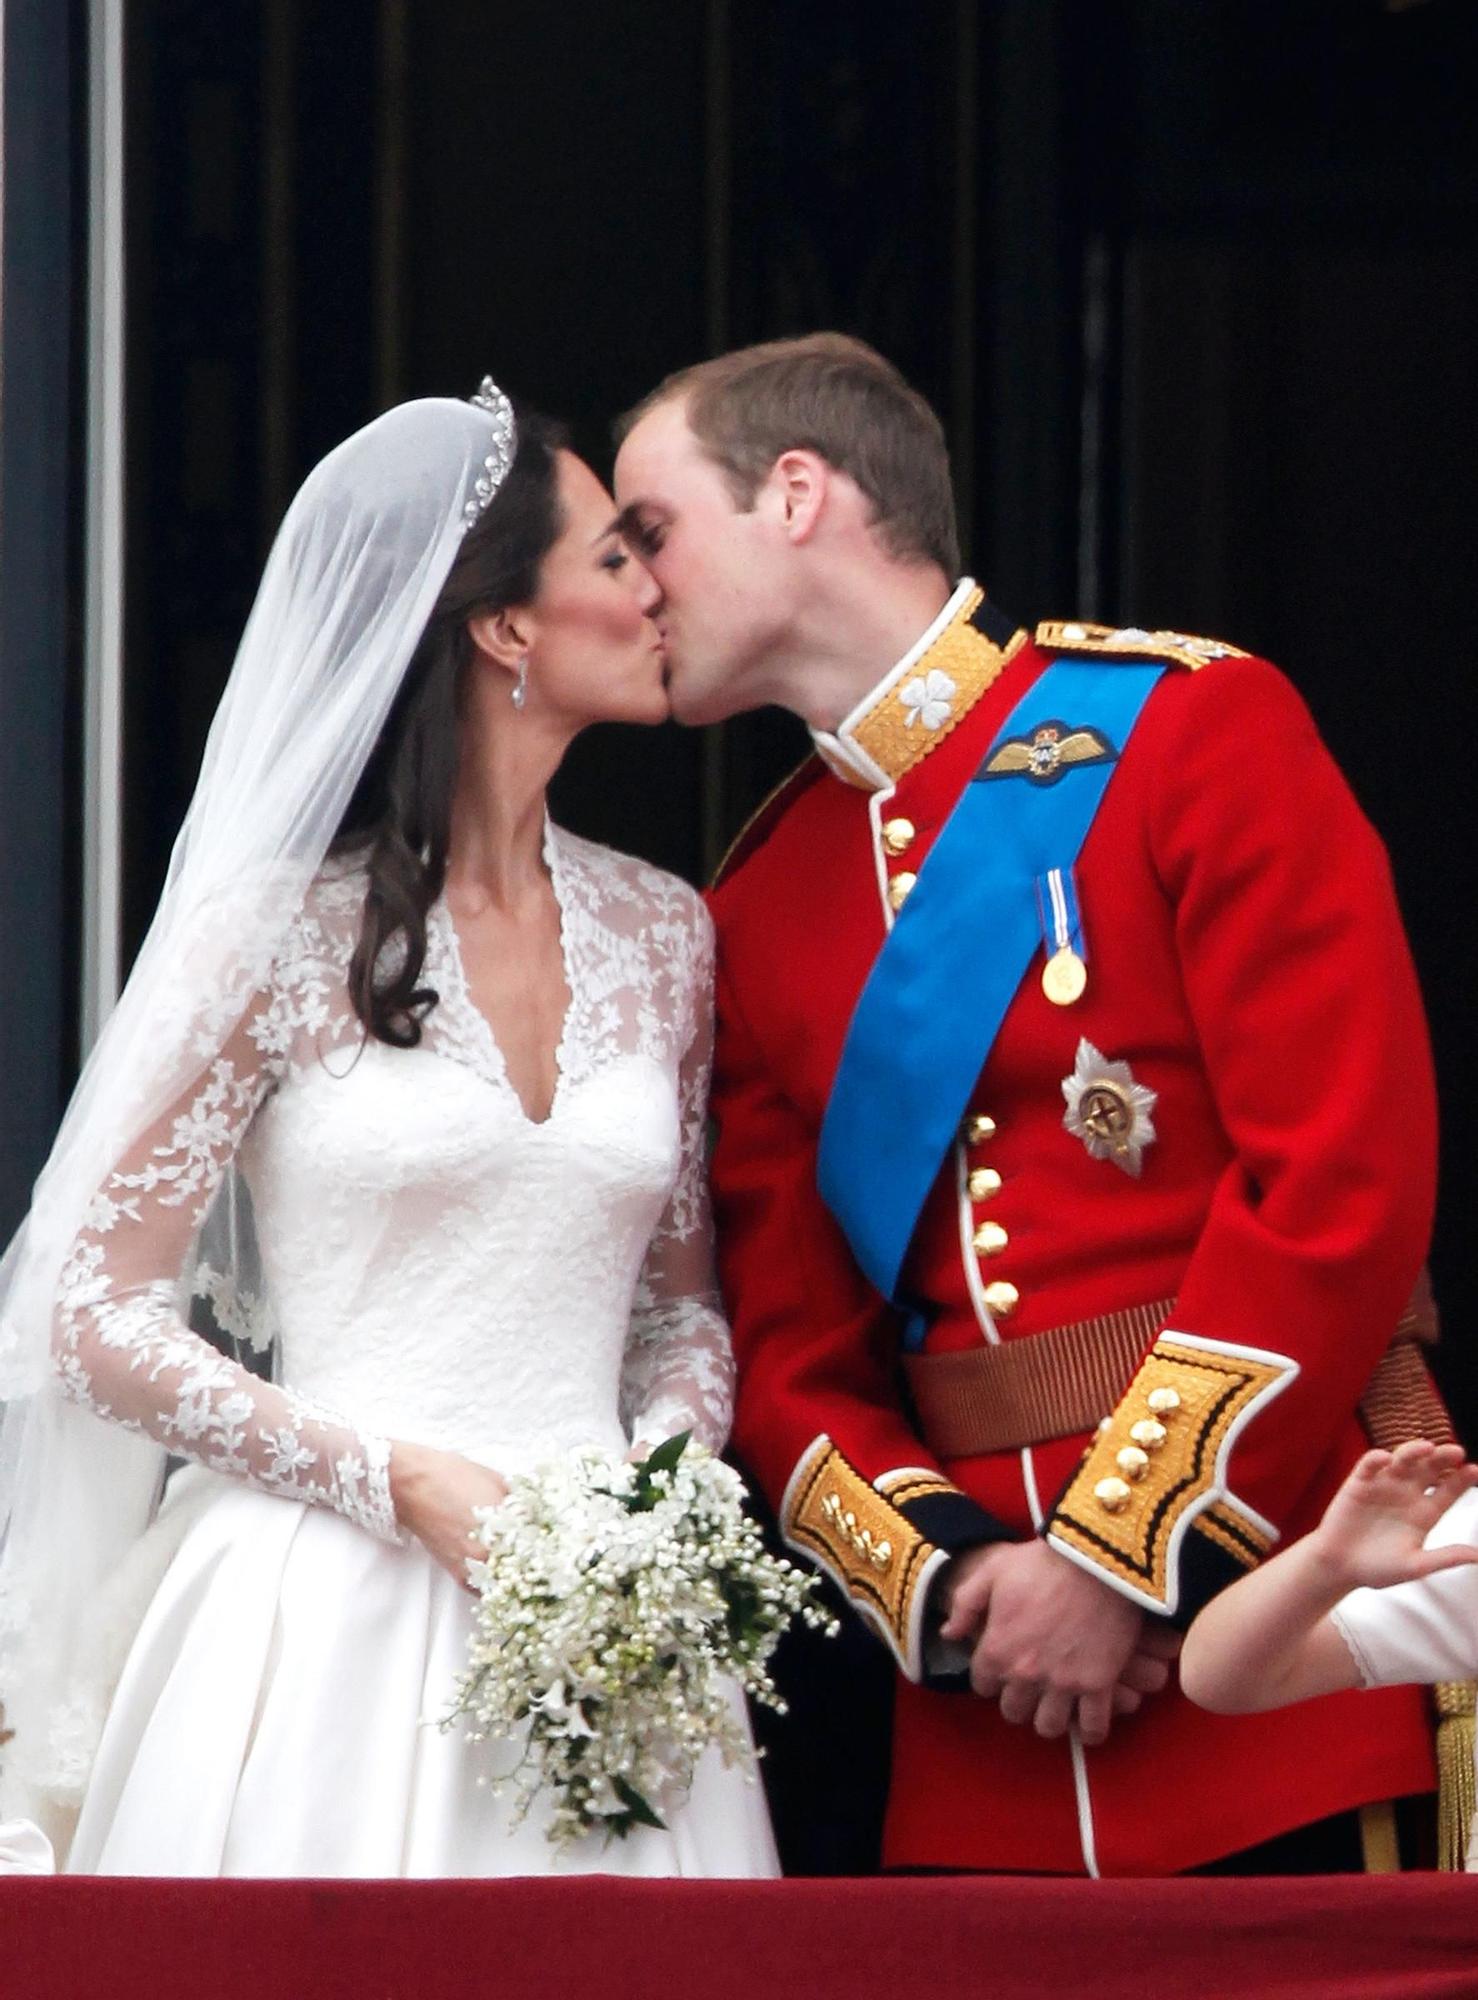 Decimotercer aniversario de la boda de los príncipes de Gales.